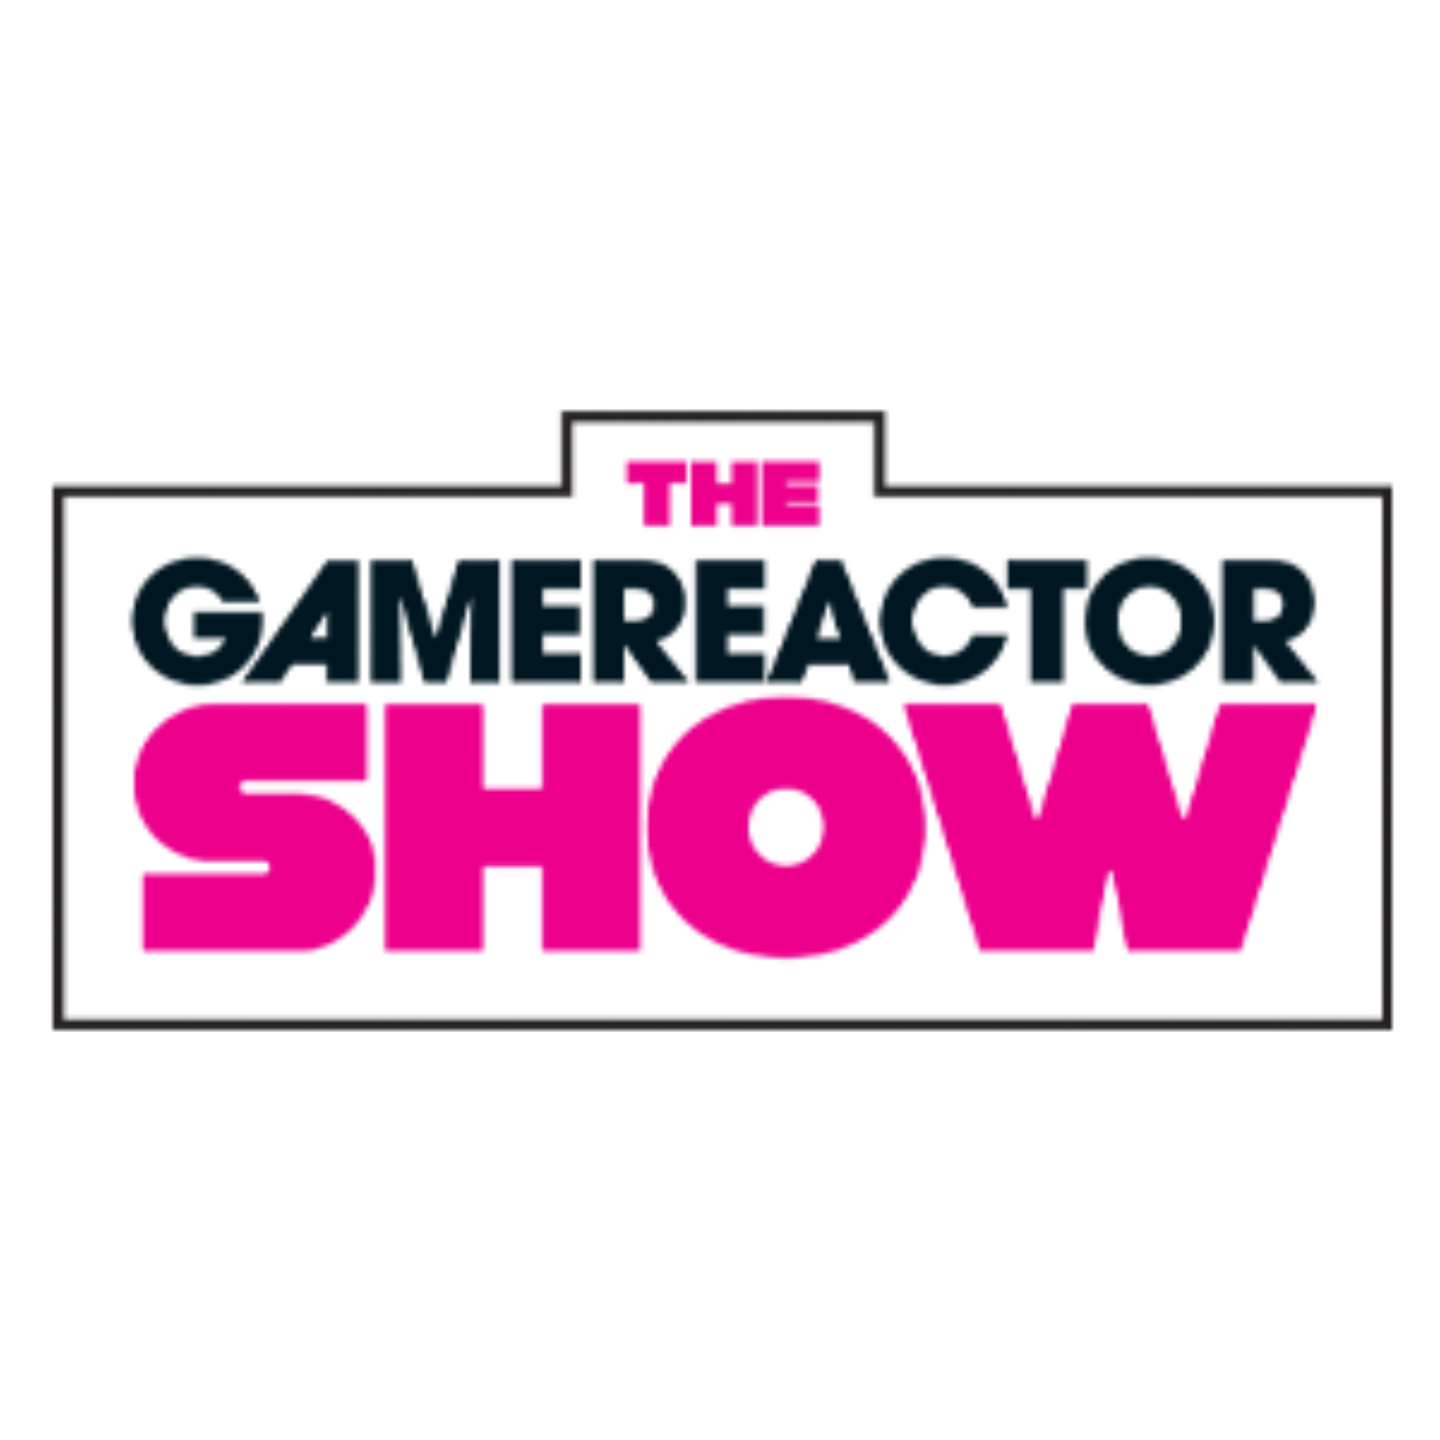 Hablamos de Barbie y Oppenheimer en el último episodio de The Gamereactor Show